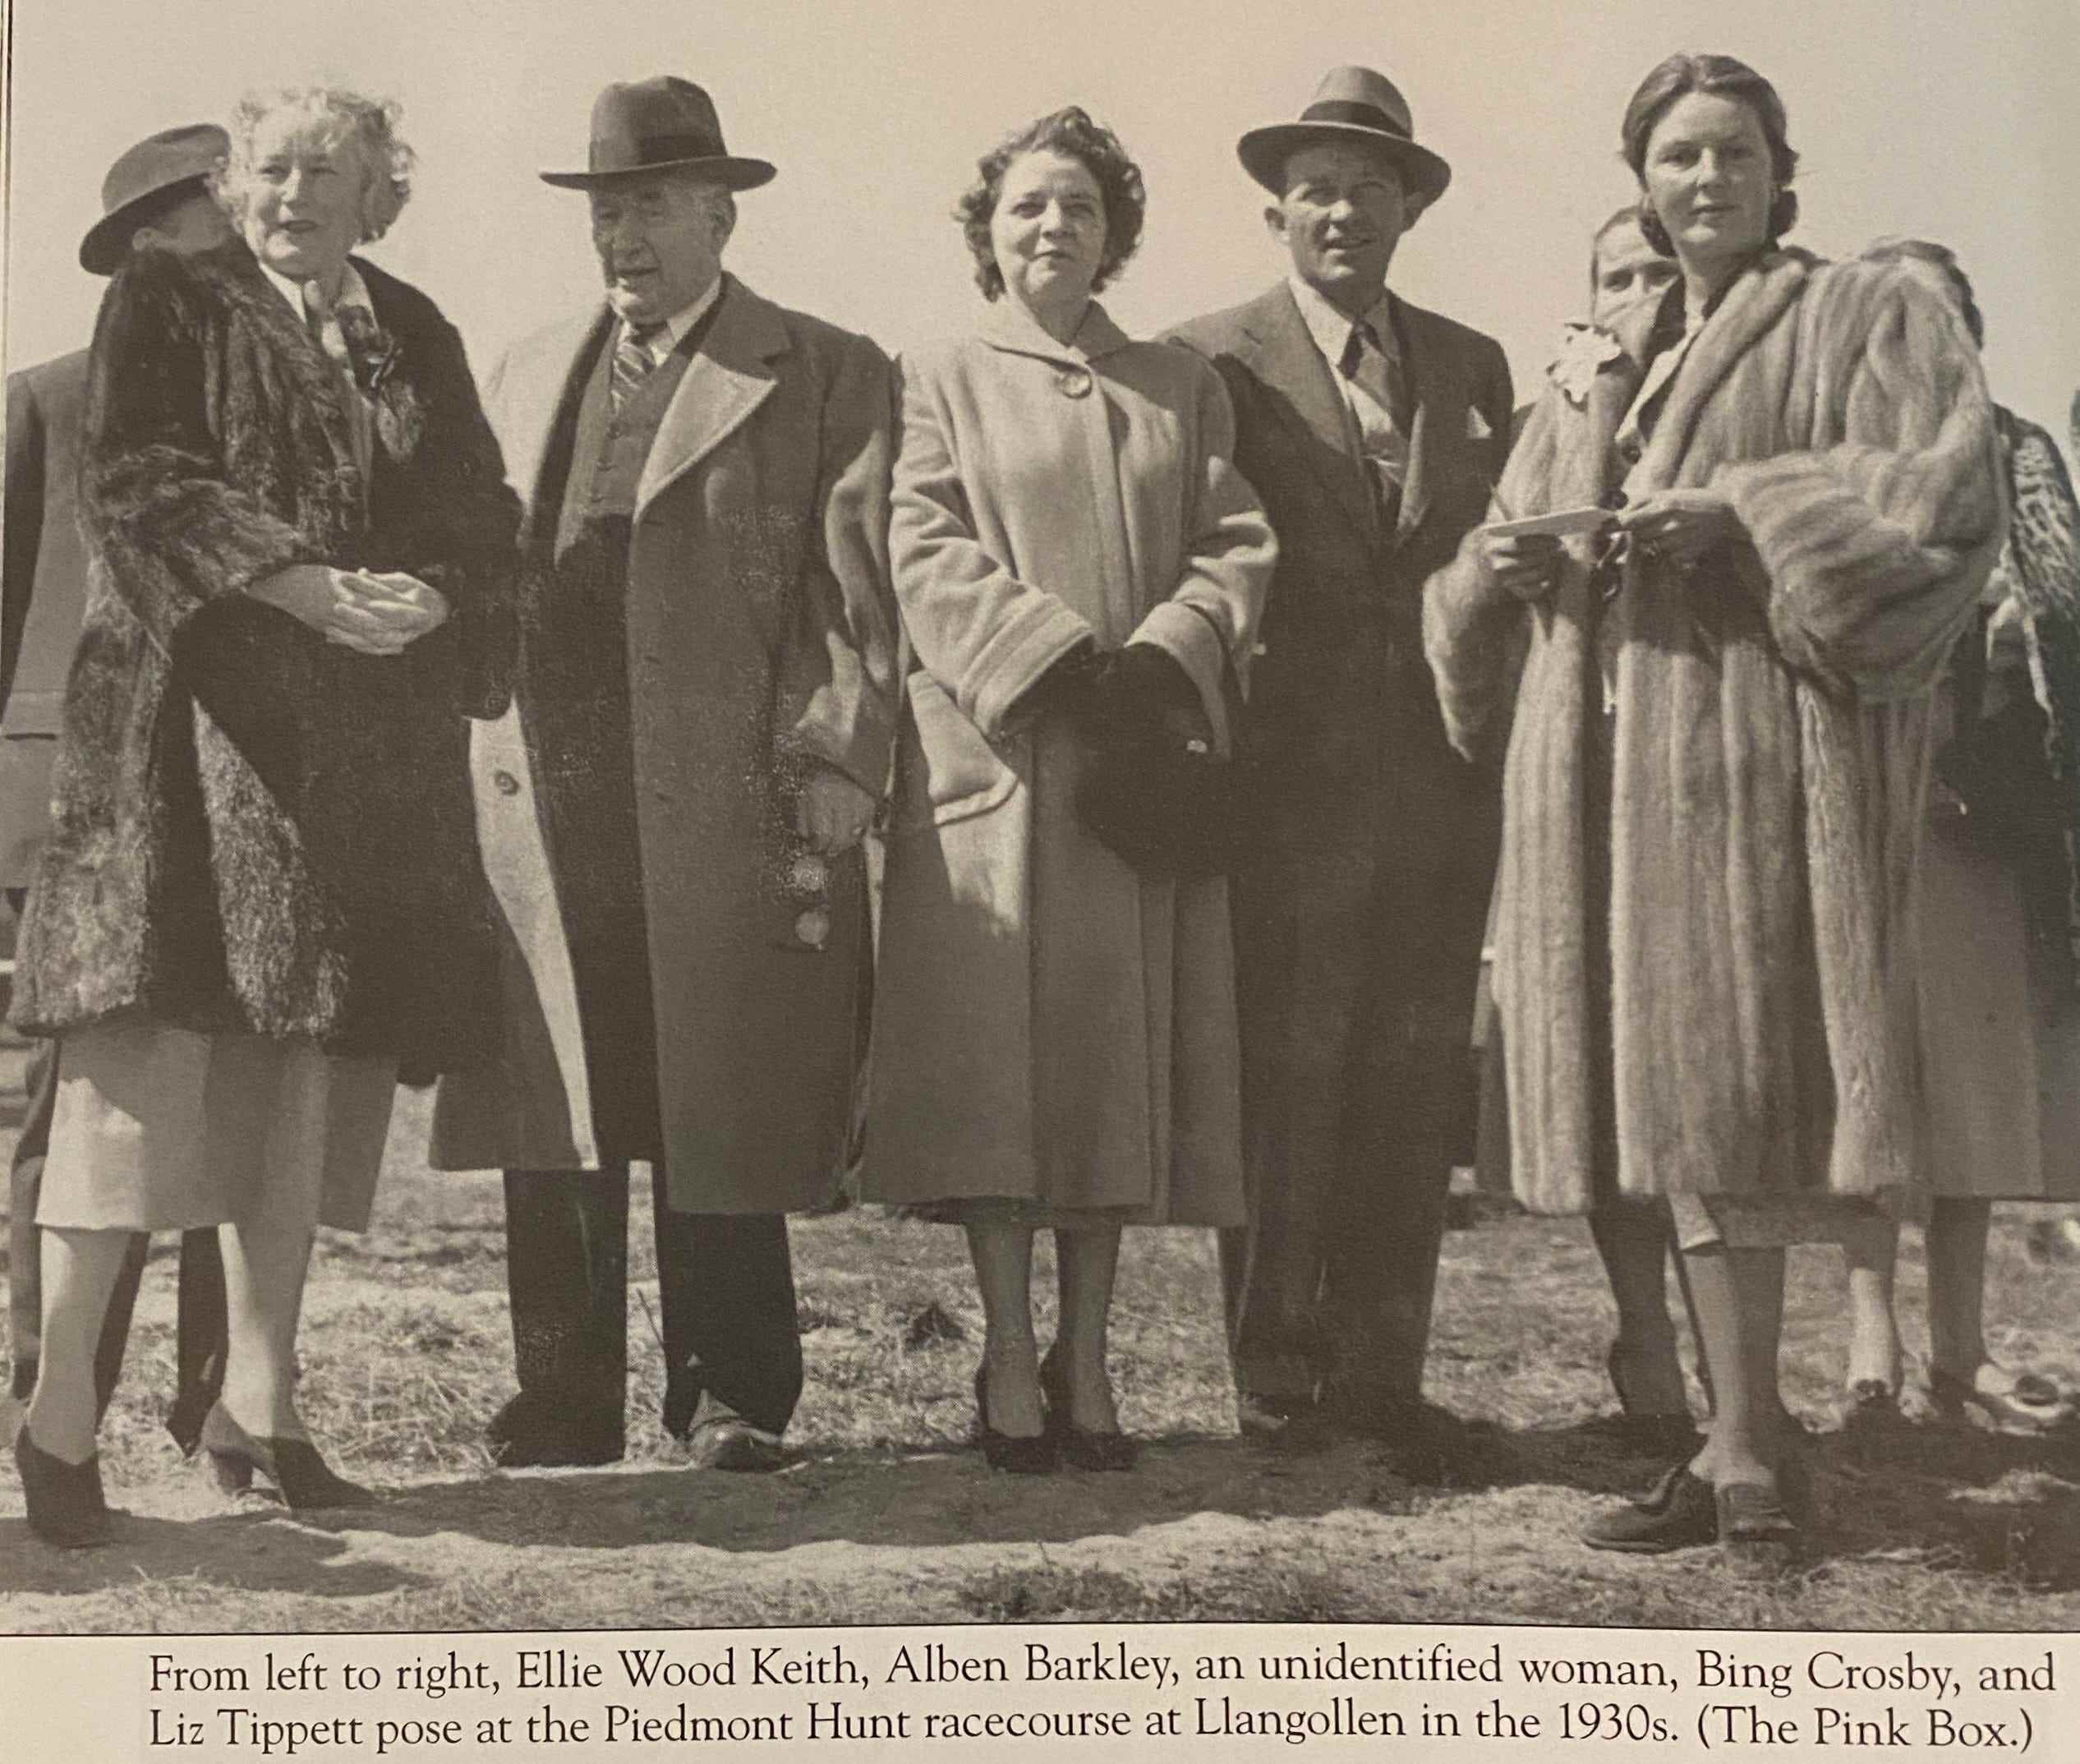 Ein altes Bild, das berühmte historische Persönlichkeiten auf dem Llangollen-Anwesen in den 1930er Jahren zeigt, darunter Alben Barkley und Bing Crosby.